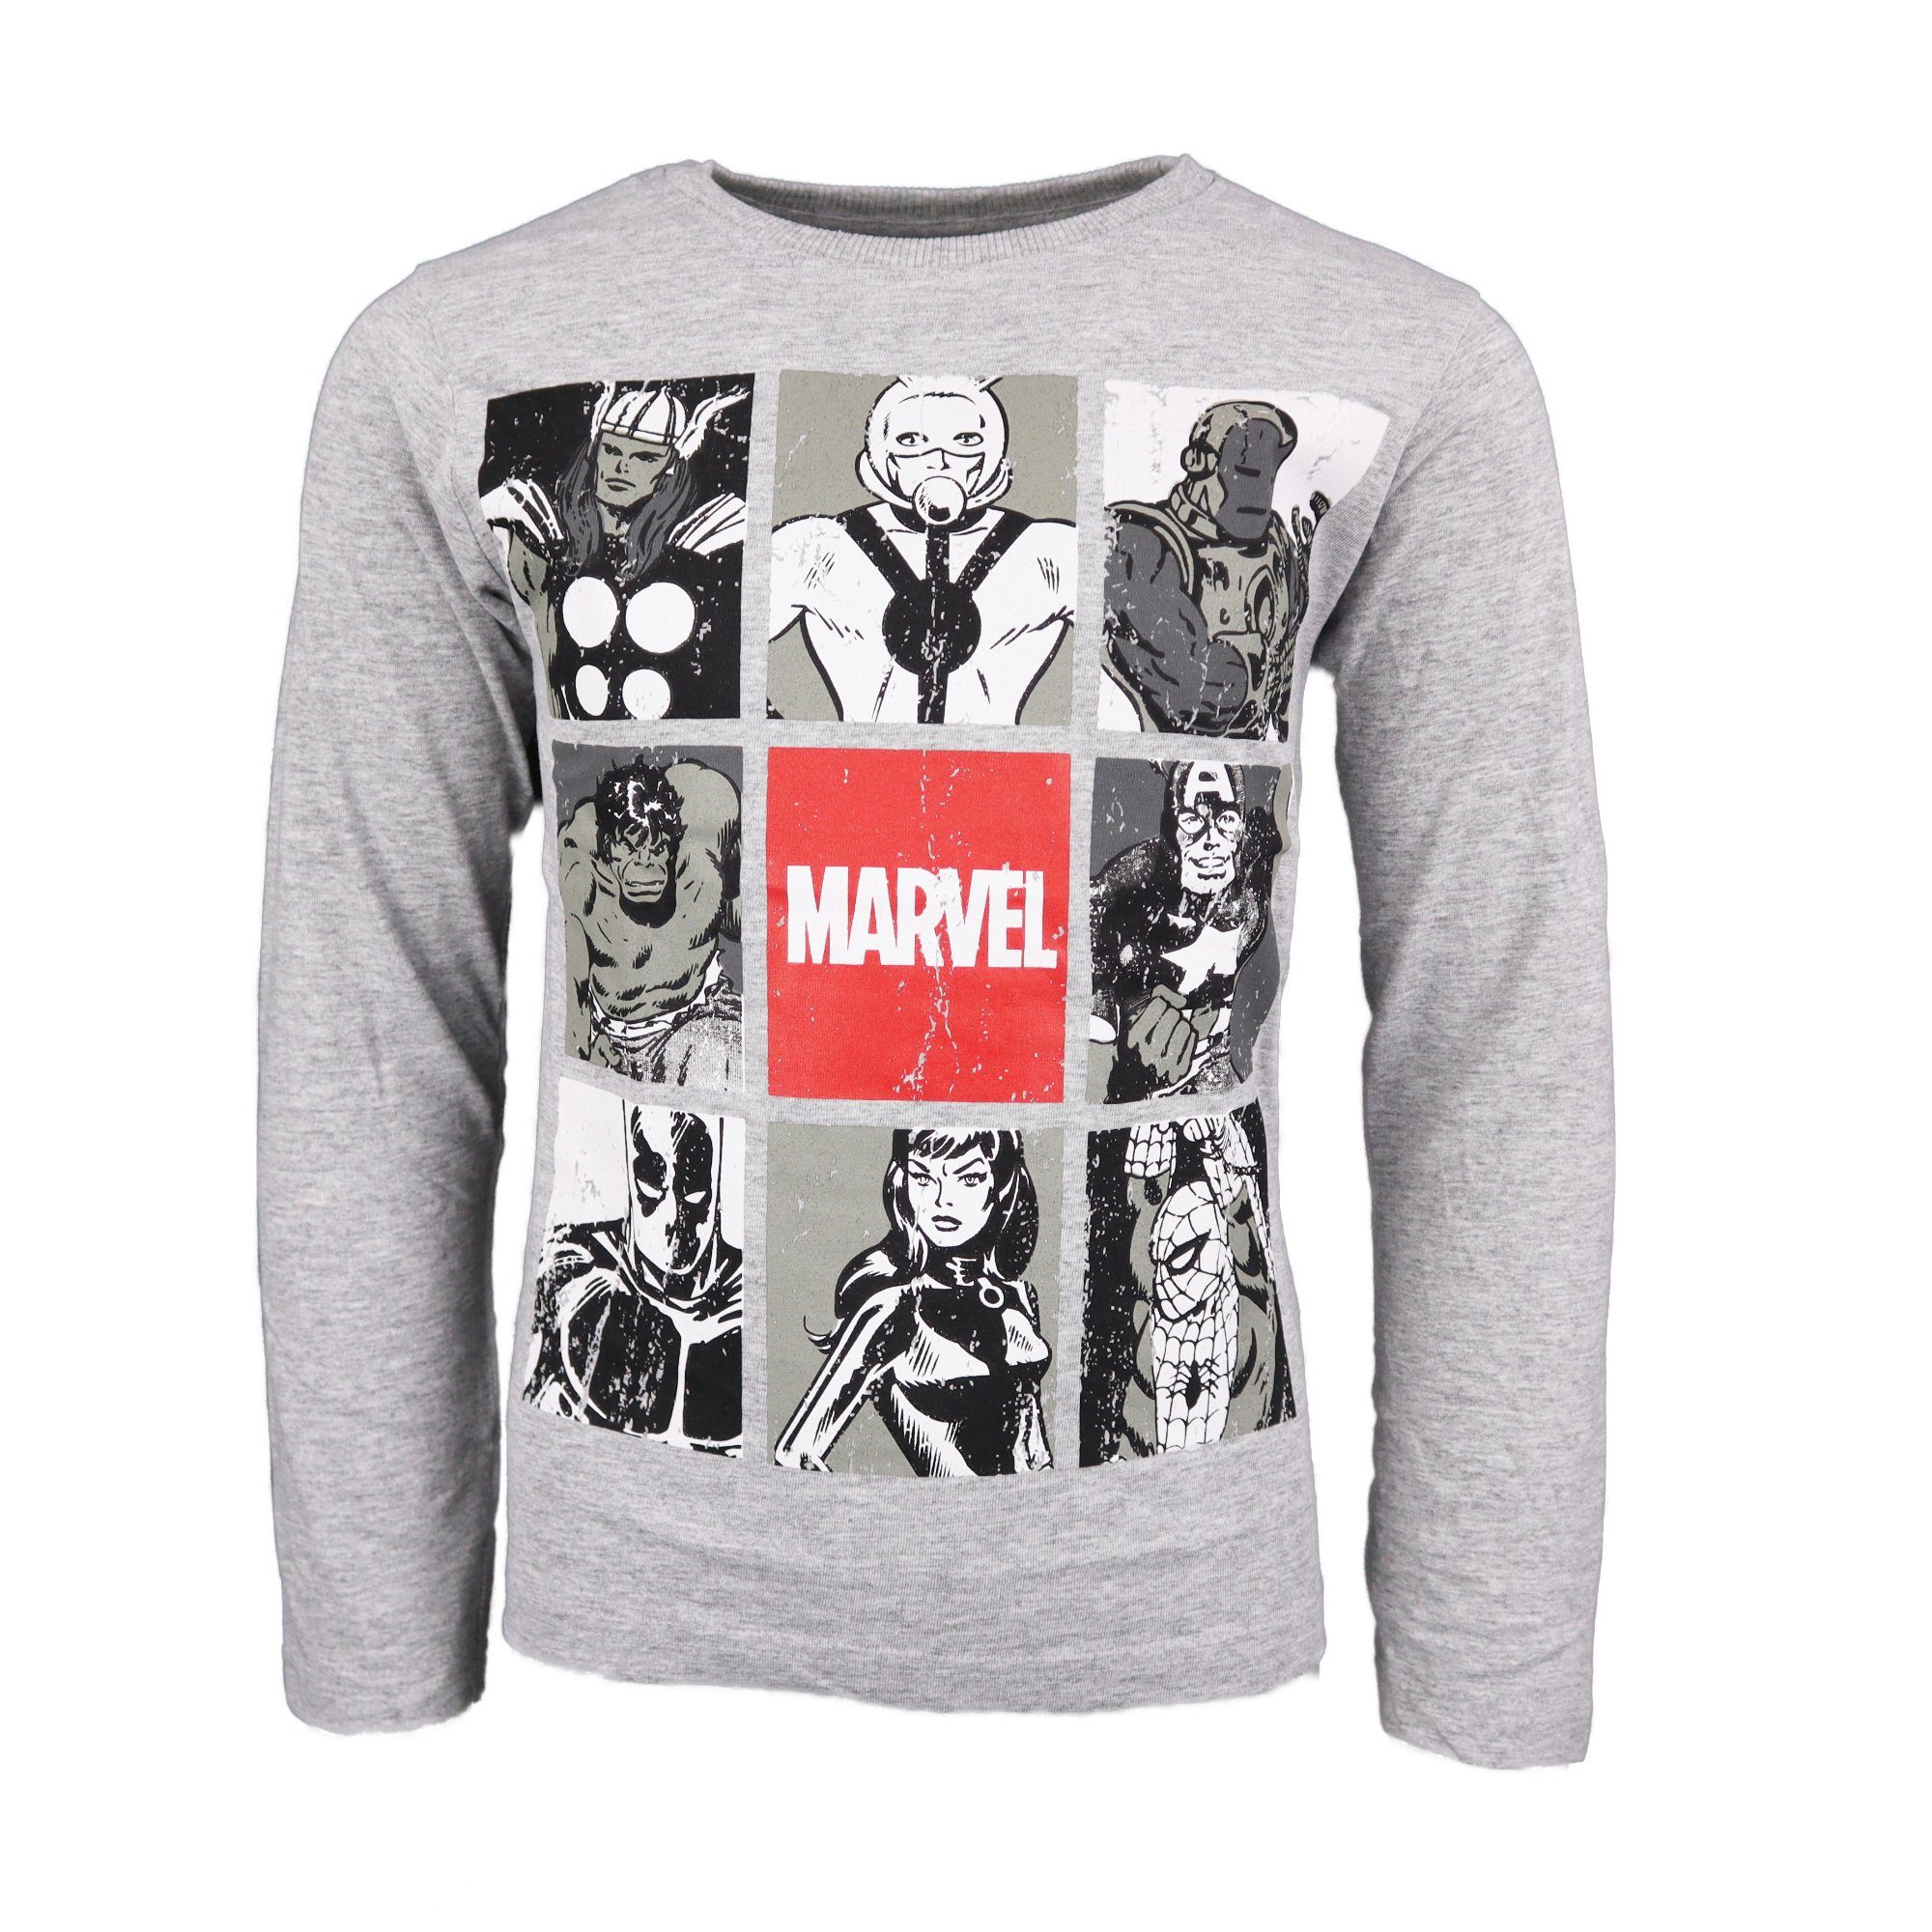 MARVEL Langarmshirt Marvel Avengers Jugend Jungen langarm Shirt Gr. 134 bis  164, Grau oder Schwarz